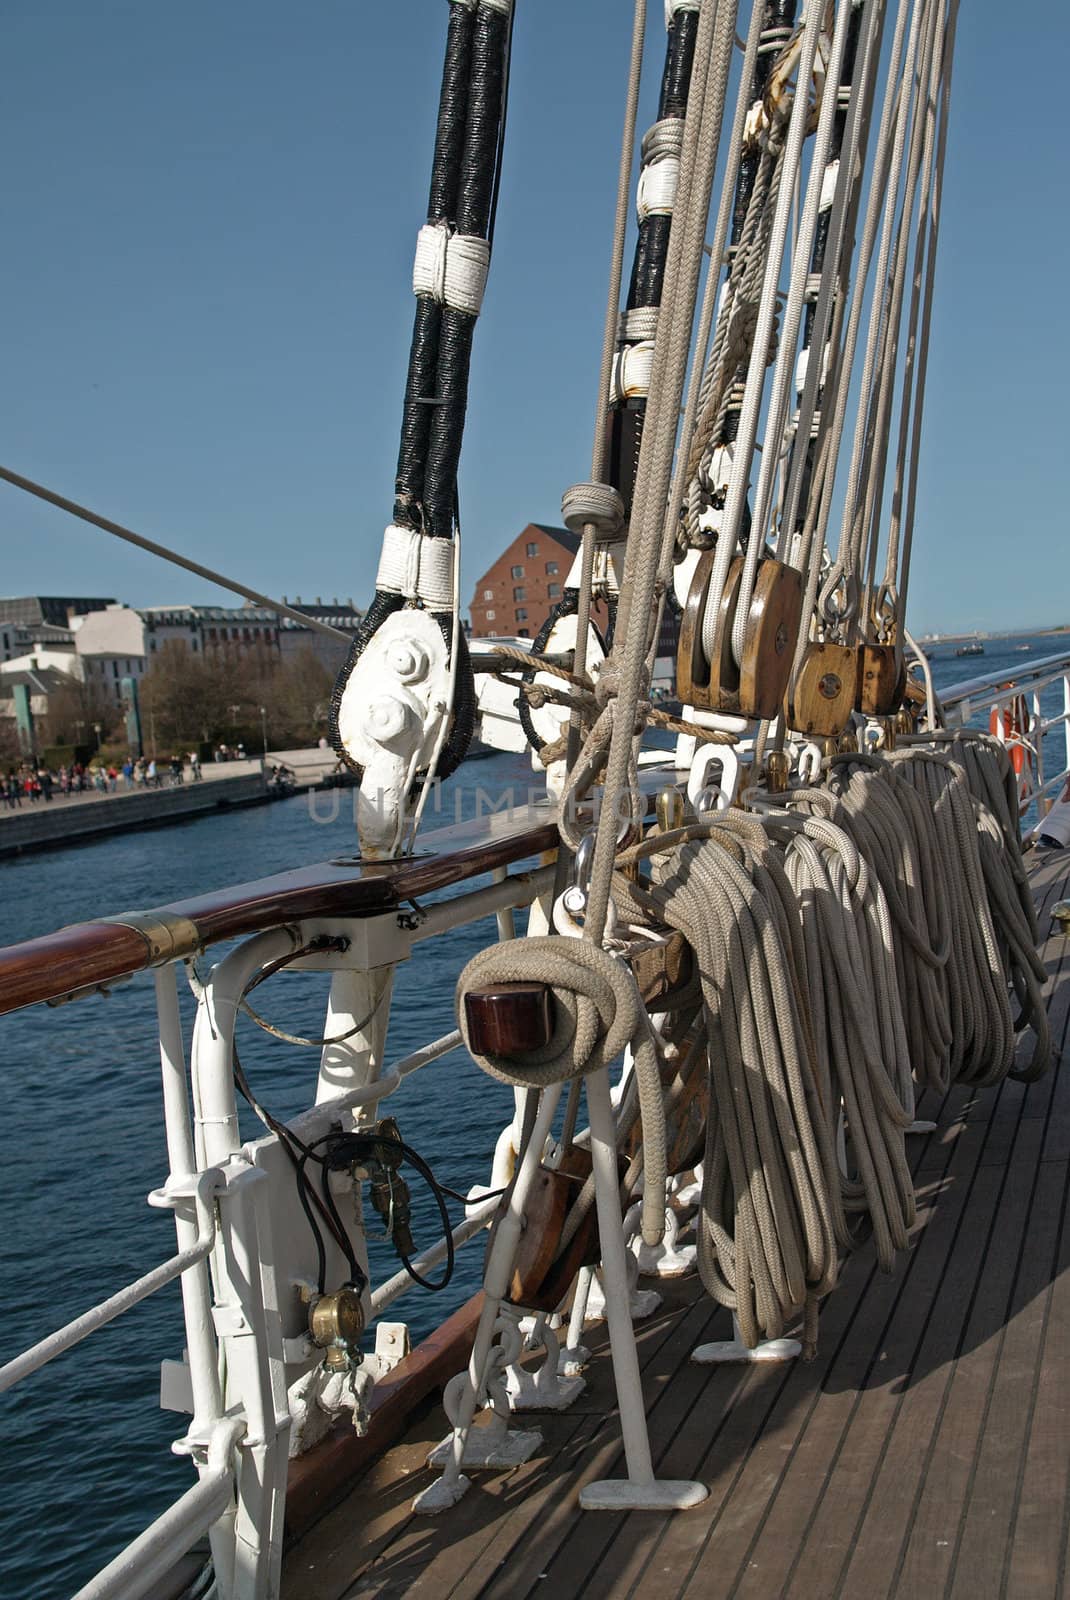 reeled sail ropes by Ric510